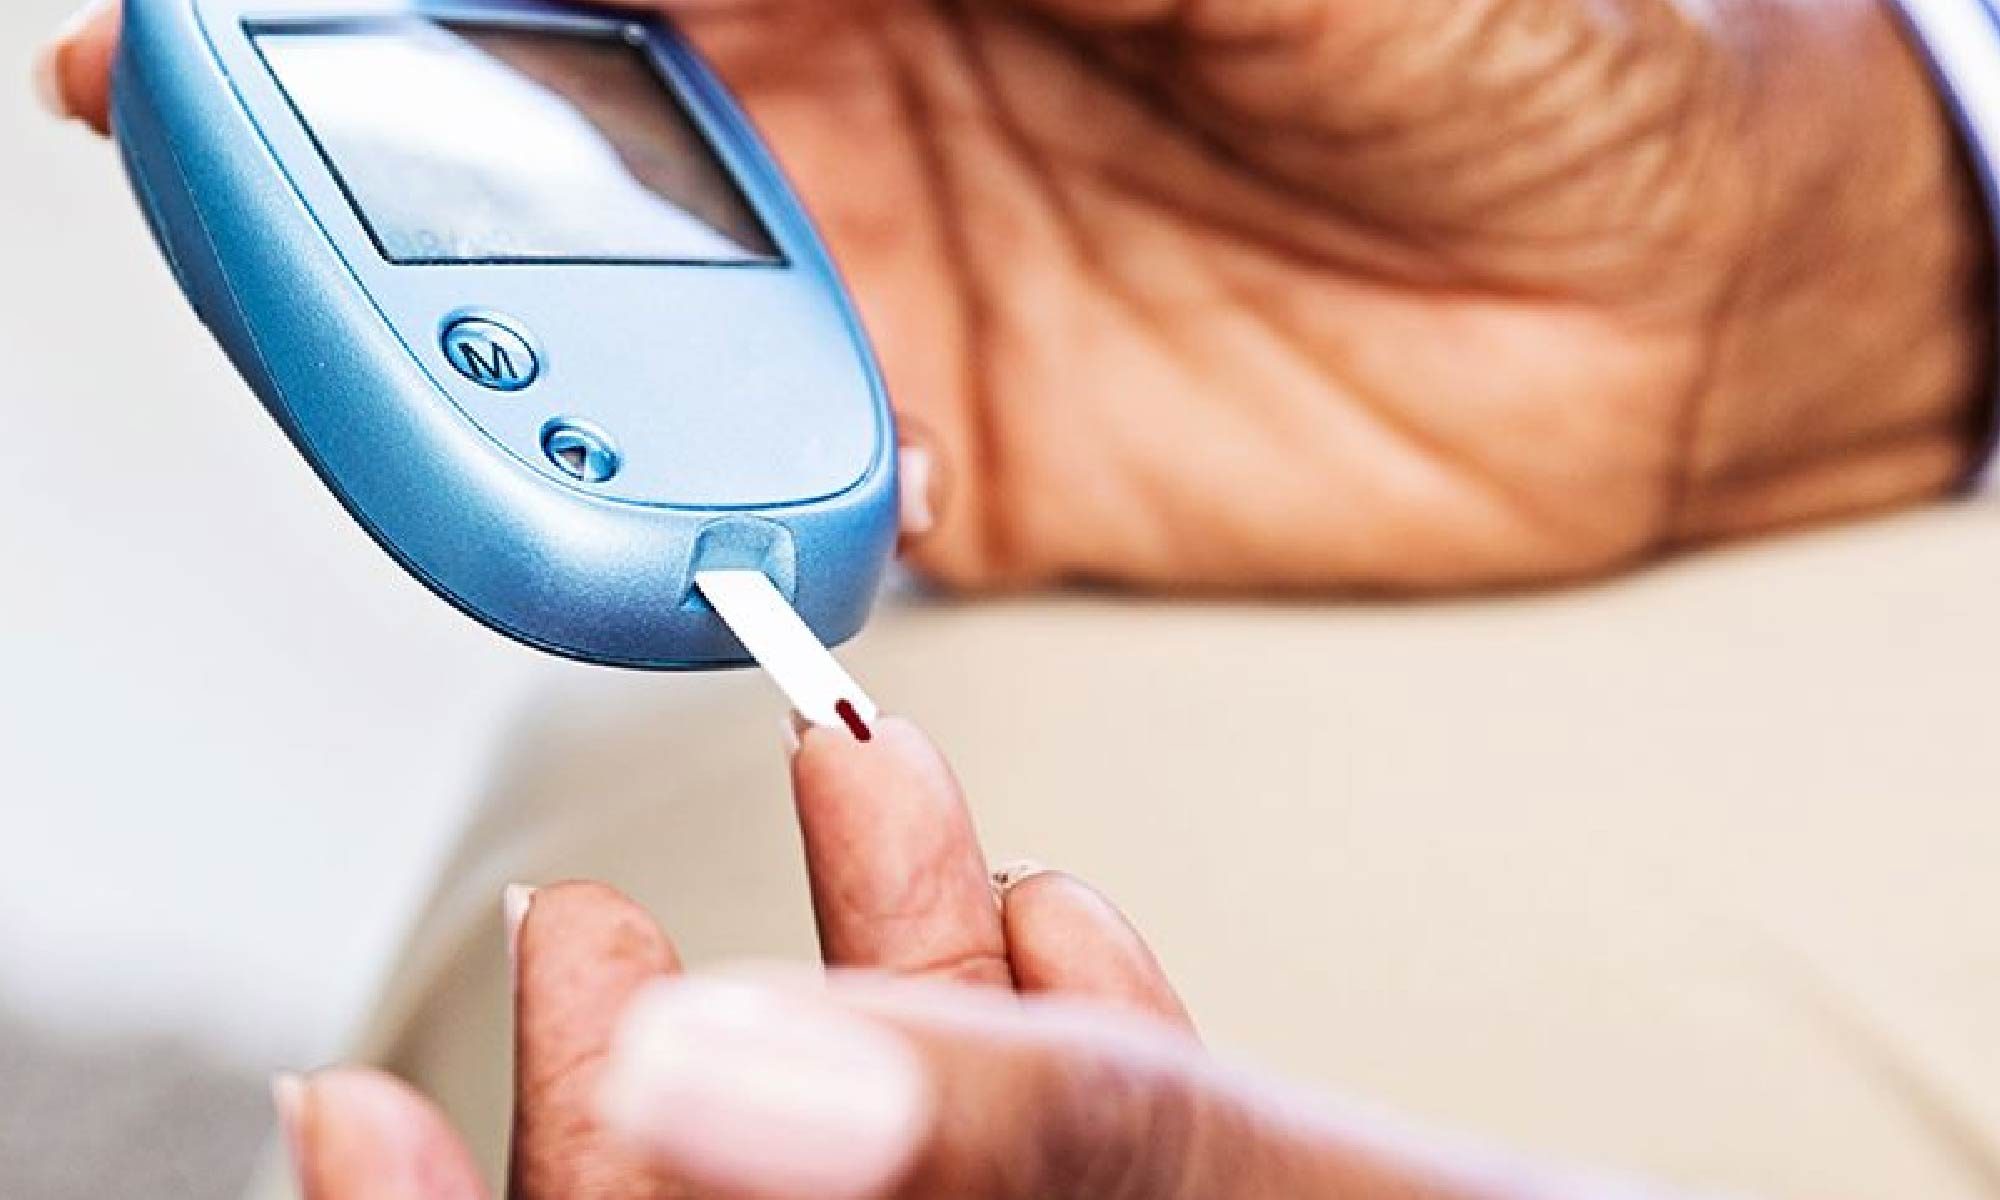 imagem de uma pessoa medindo a glicemia. Está escrito: "Dicas para controlar o Diabetes" #diabetes e há a logo da Retina Brasil